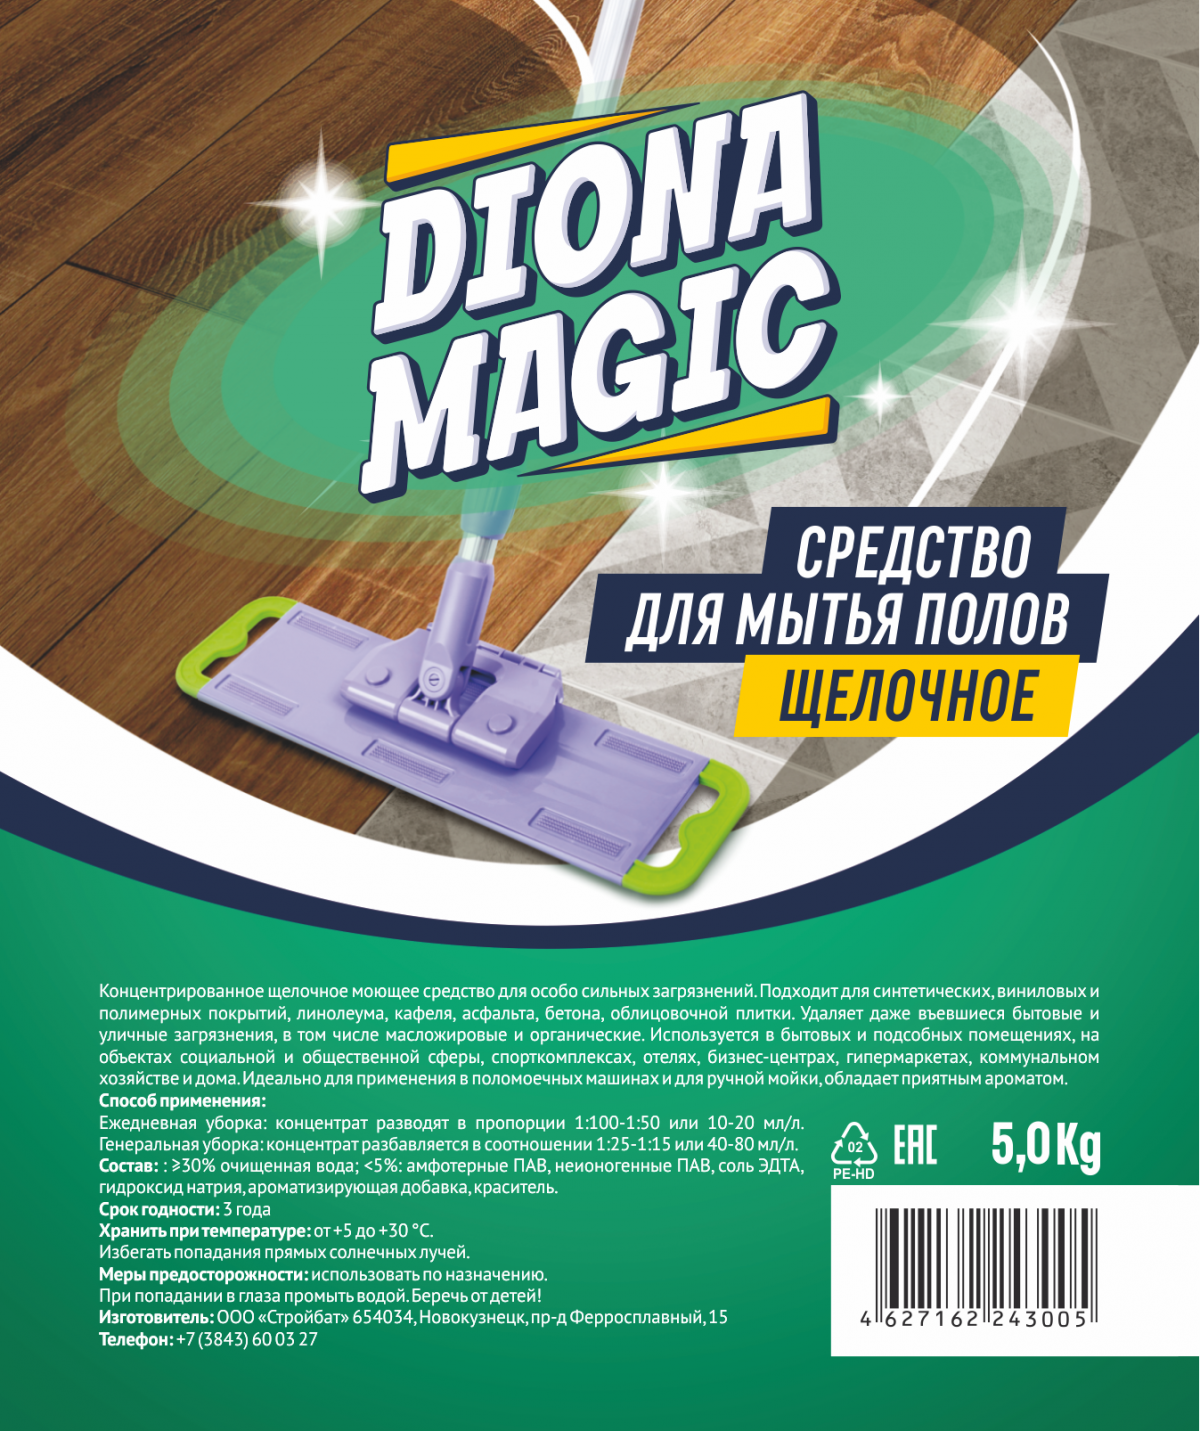 Щелочное средство для мытья пола Diona Magic 5кг